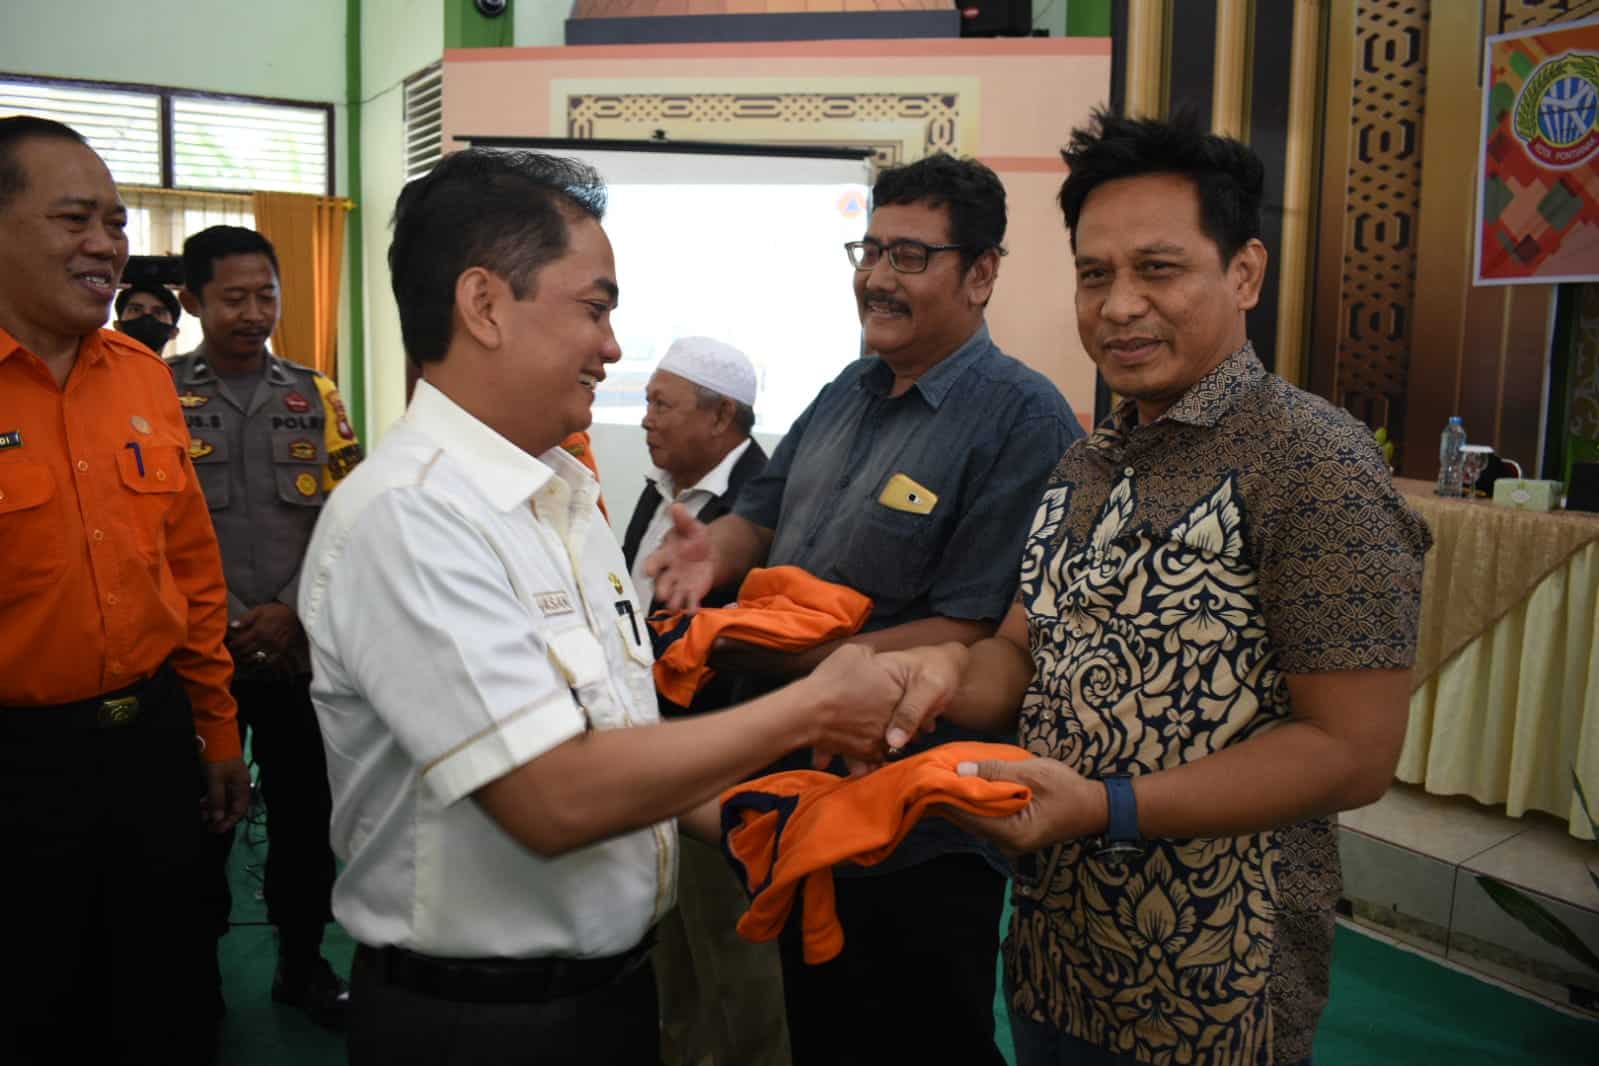 Wakil Wali Kota Pontianak, Bahasan menyerahkan secara simbolis baju kaos Kelurahan Tangguh Bencana. (Prokopim For KalbarOnline.com)